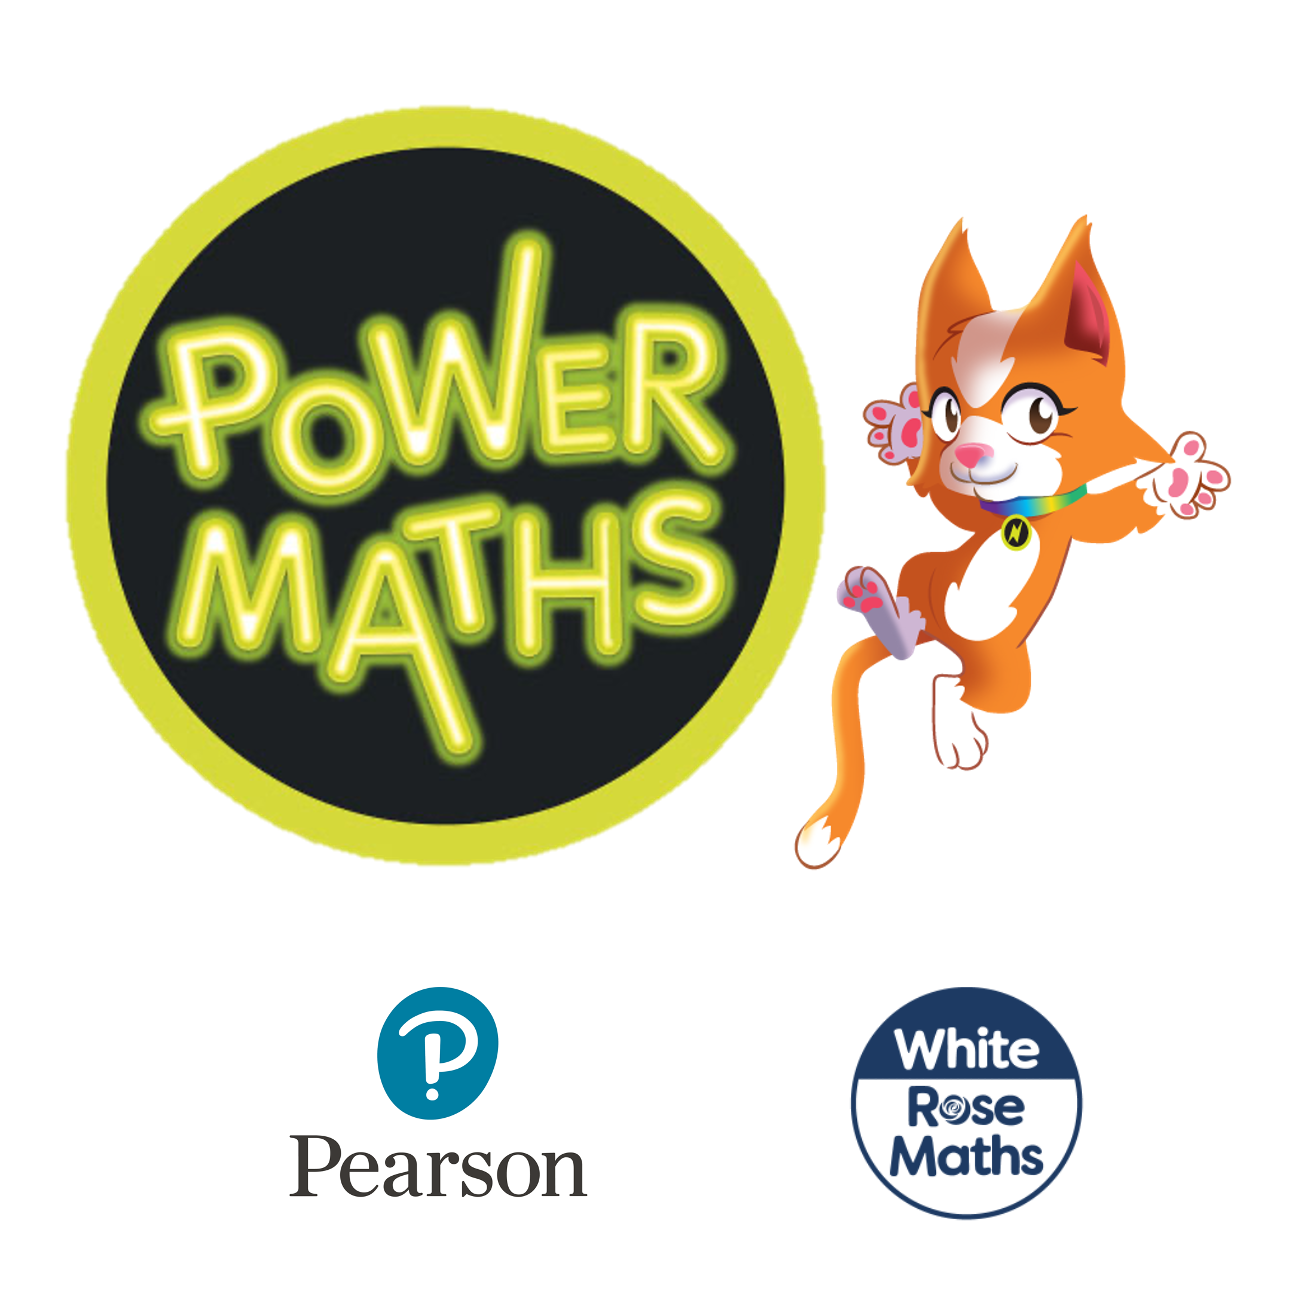 Power Maths | White Rose Maths